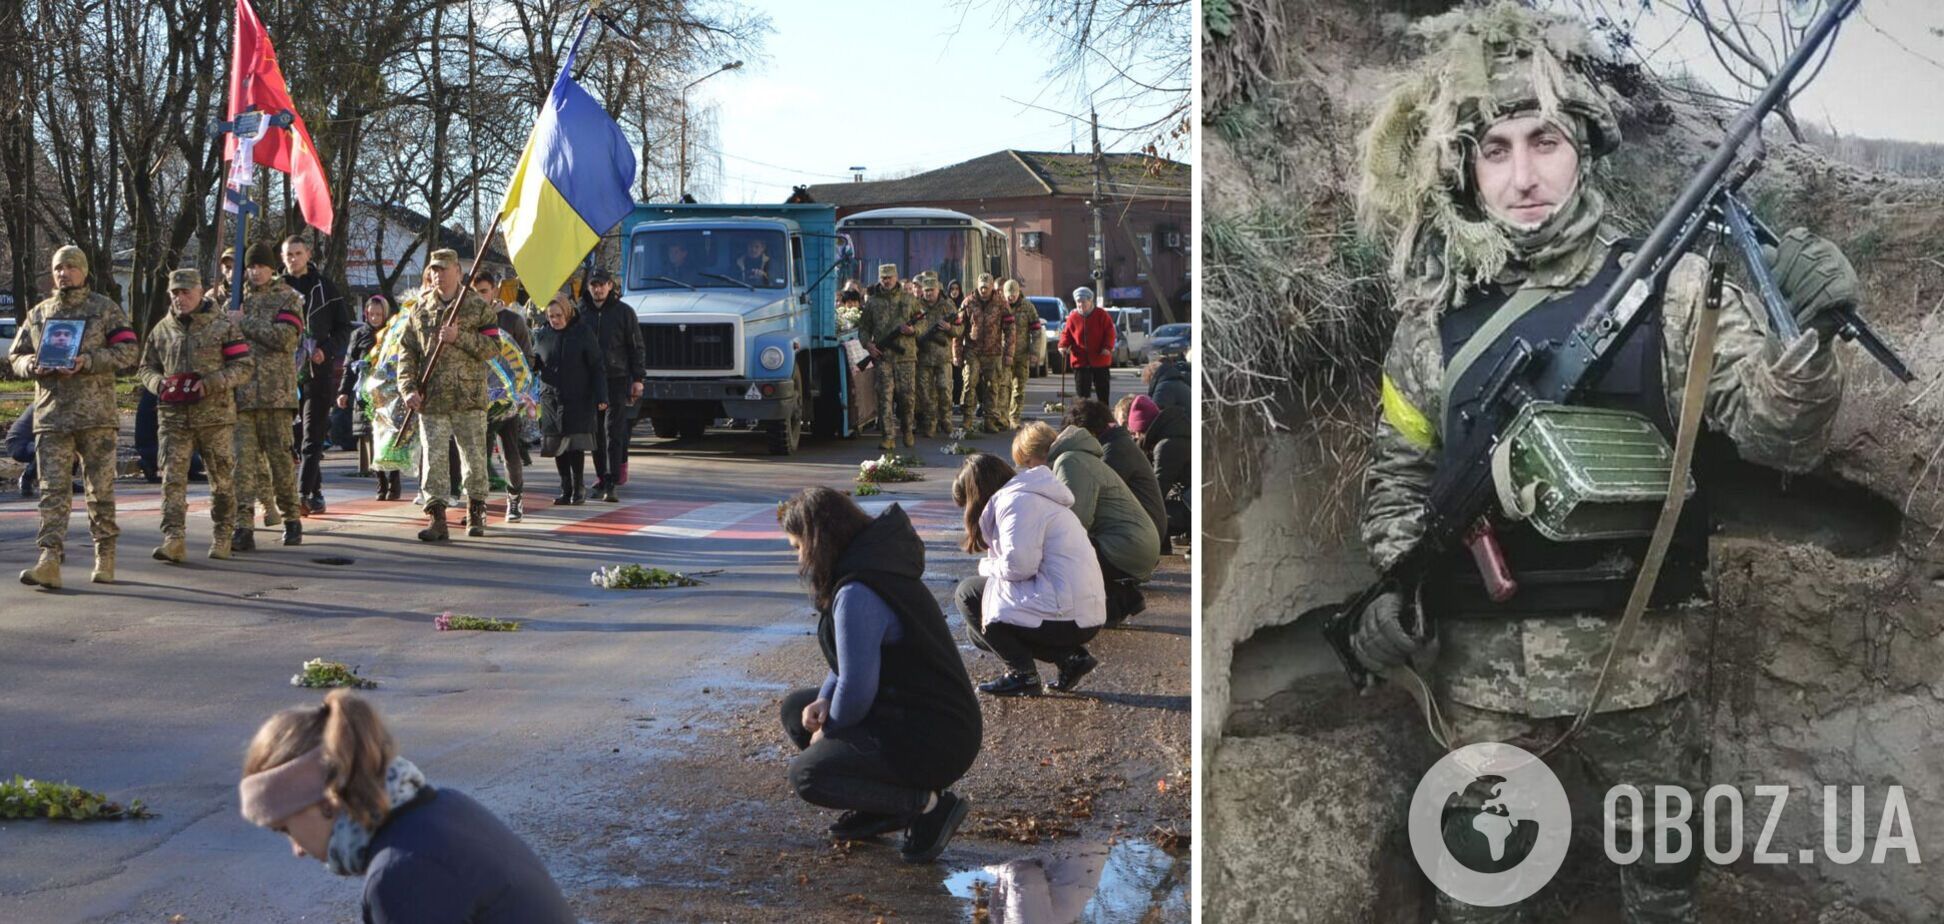 Оккупанты расстреляли украинского пленника, которого ранее сняли в пропагандистском ролике. Видео